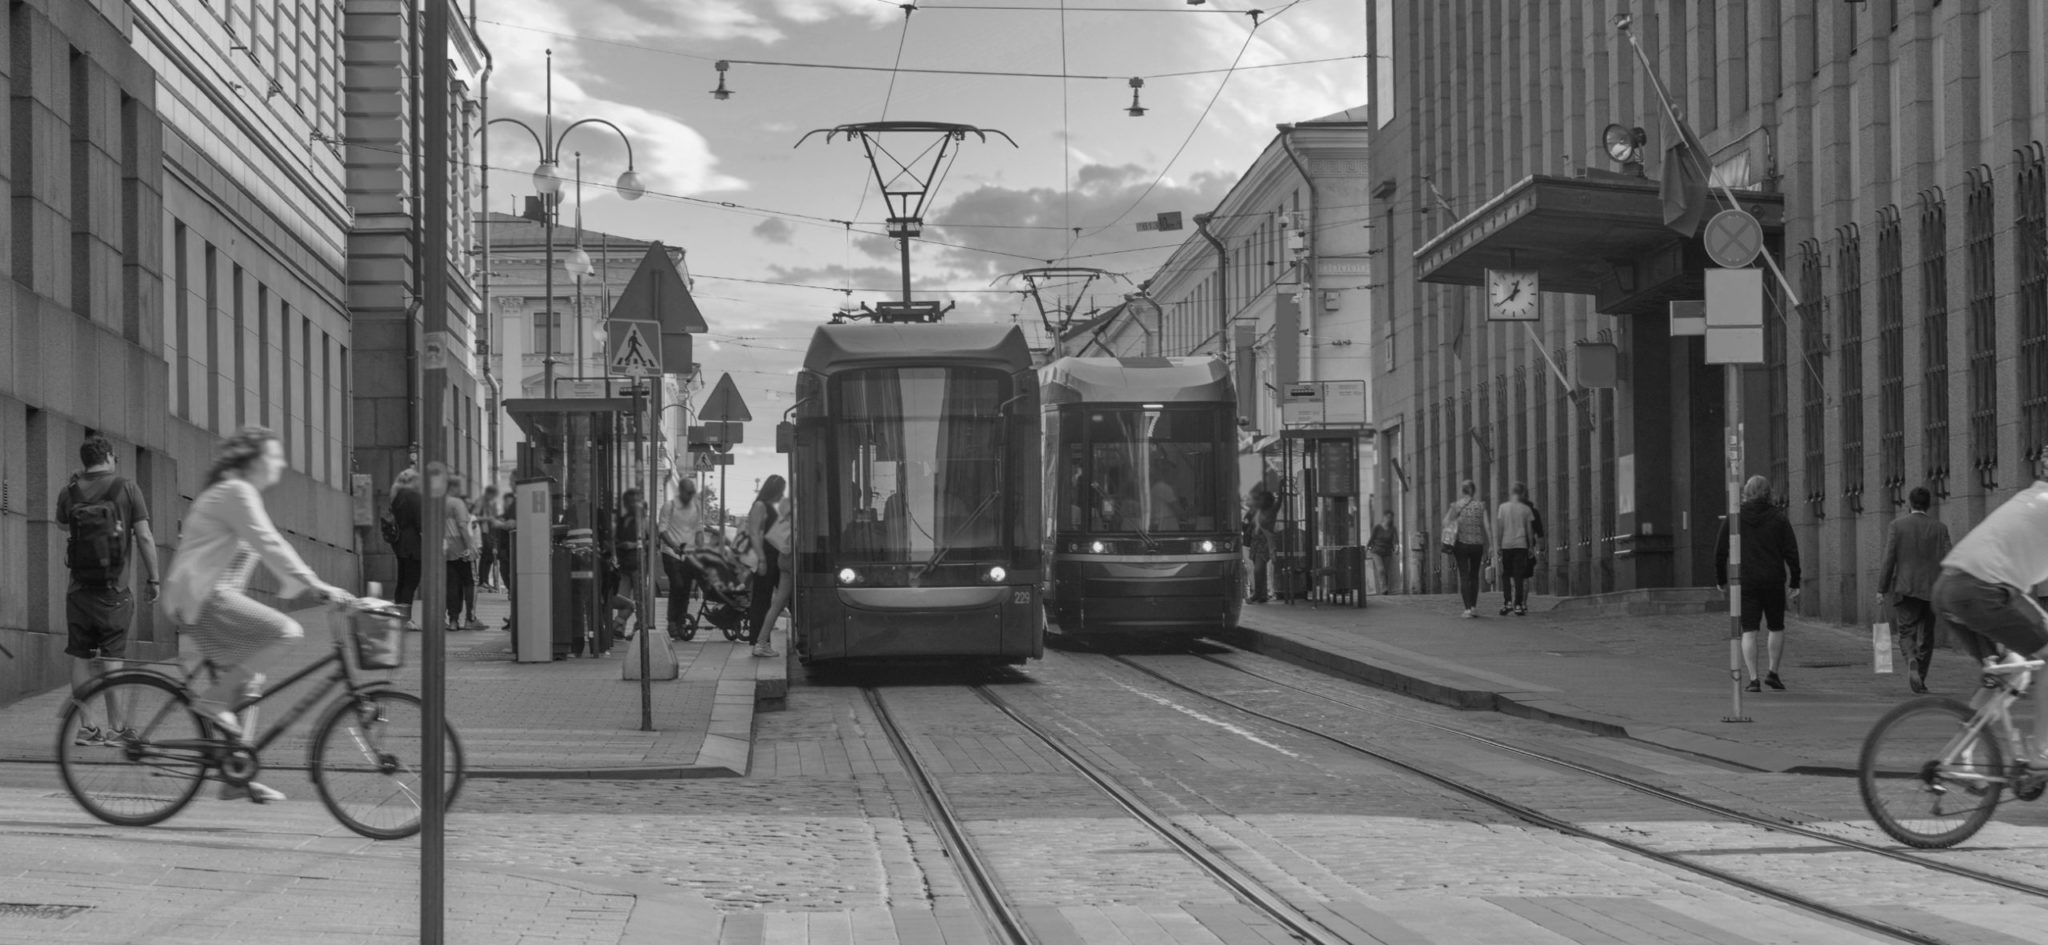 Kuva on mustavalkoinen ja siinä on katunäkymä Helsingin keskustasta, Aleksanterinkadulta. Kuvassa näkyy kaksi raitiovaunua